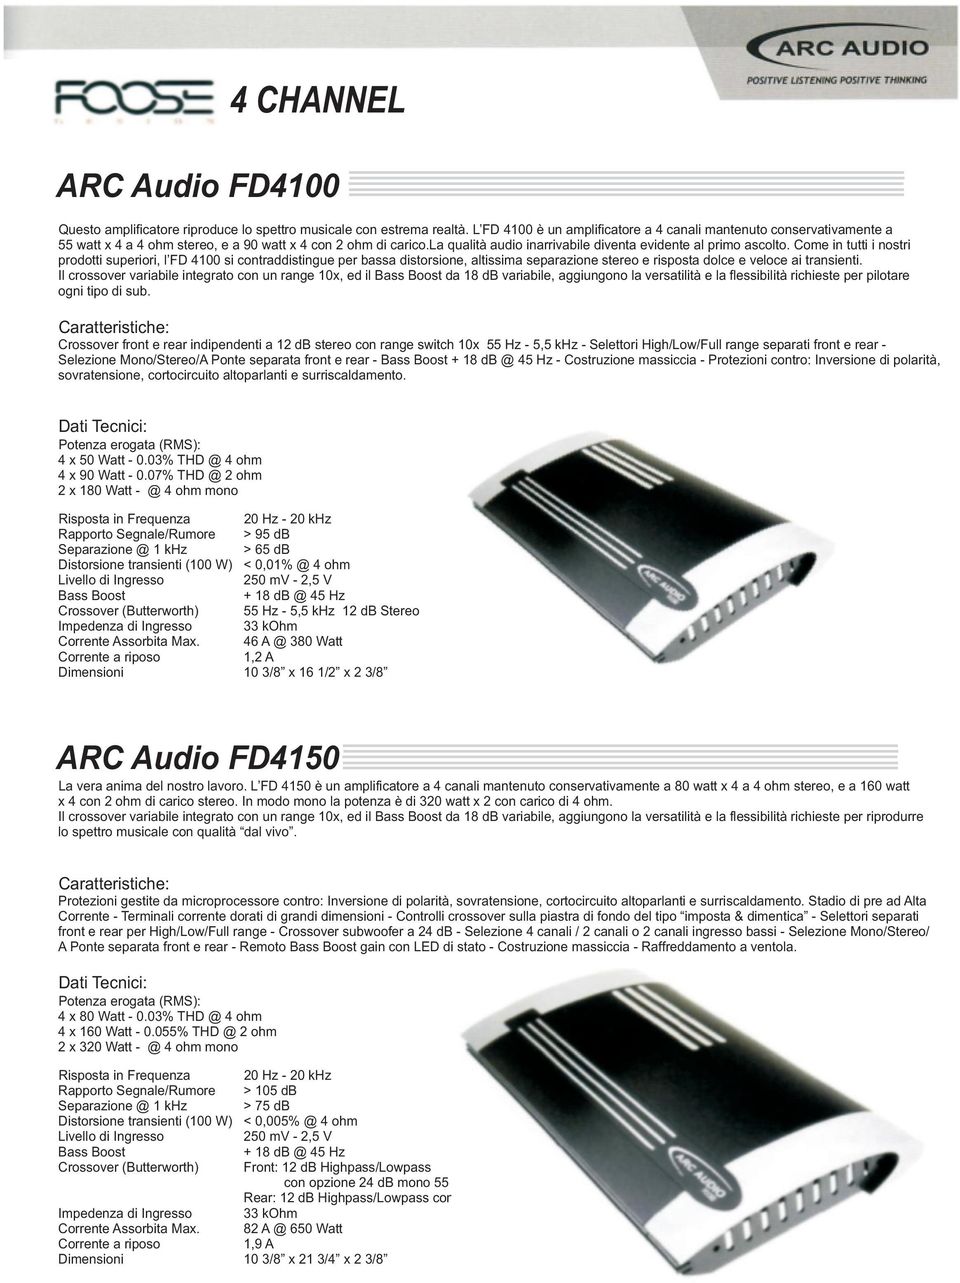 Come in tutti i nostri prodotti superiori, l FD 4100 si contraddistingue per bassa distorsione, altissima separazione stereo e risposta dolce e veloce ai transienti.